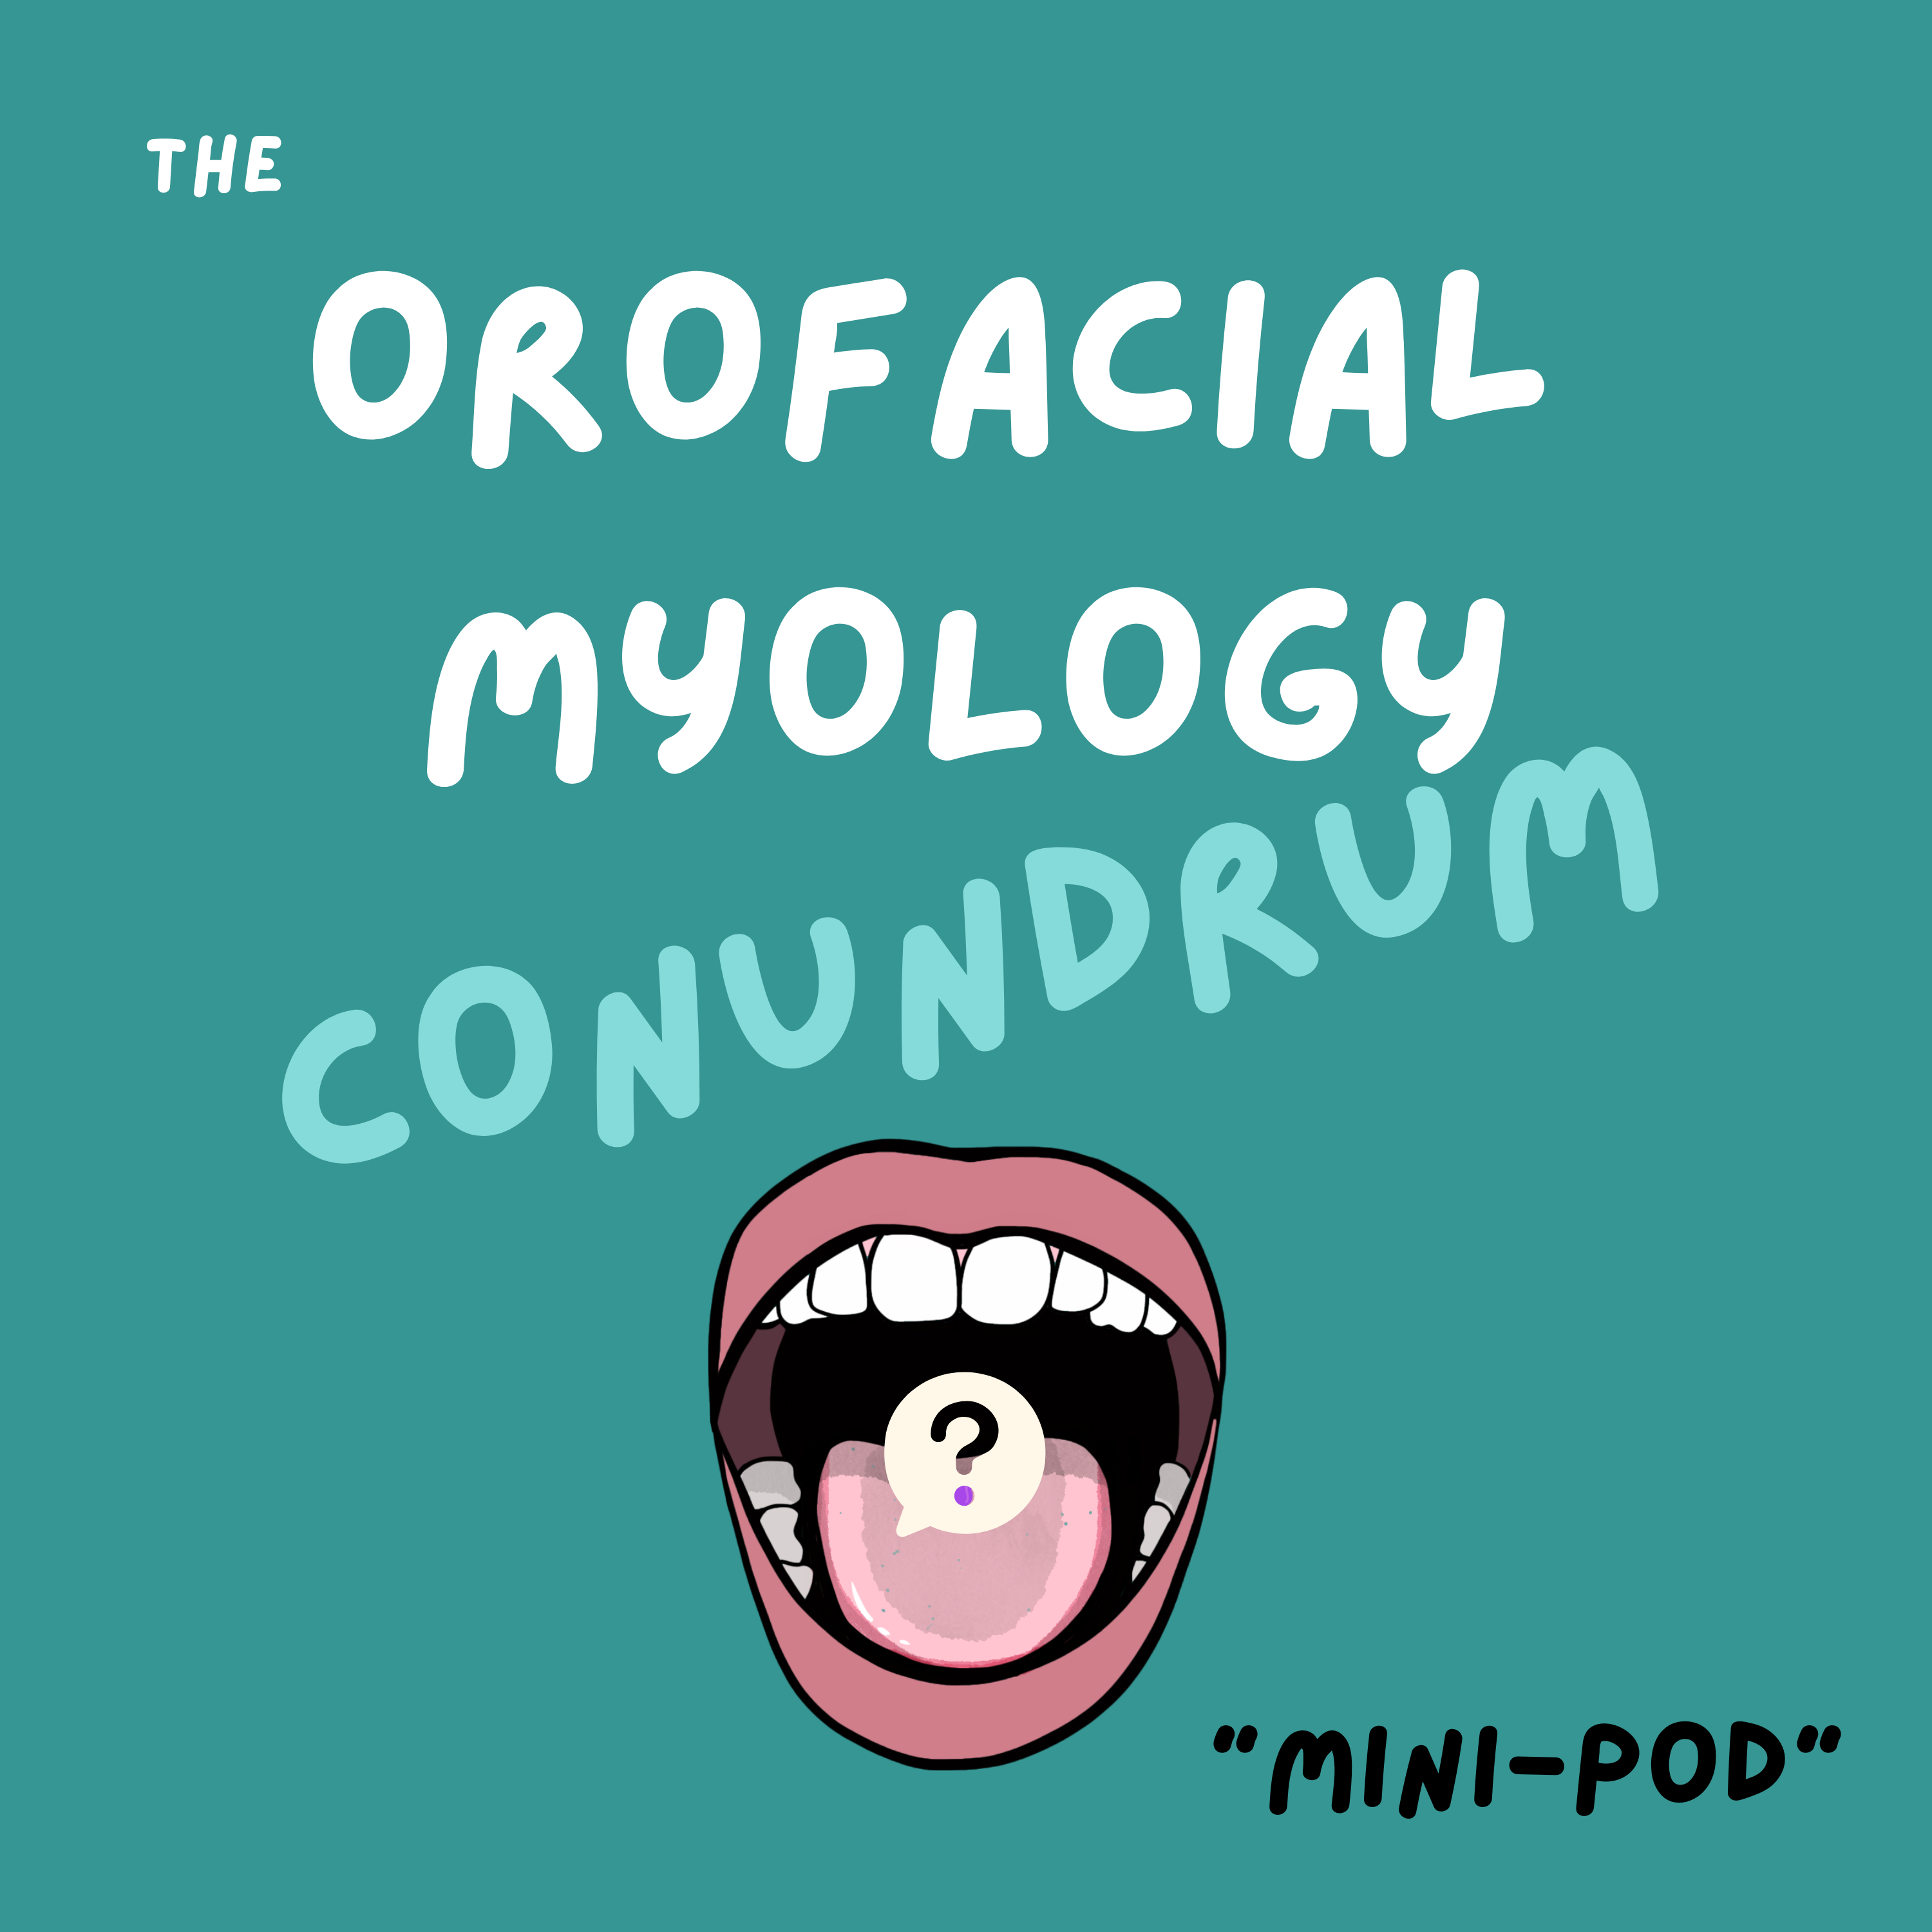 The orofacial myology conundrum podcast